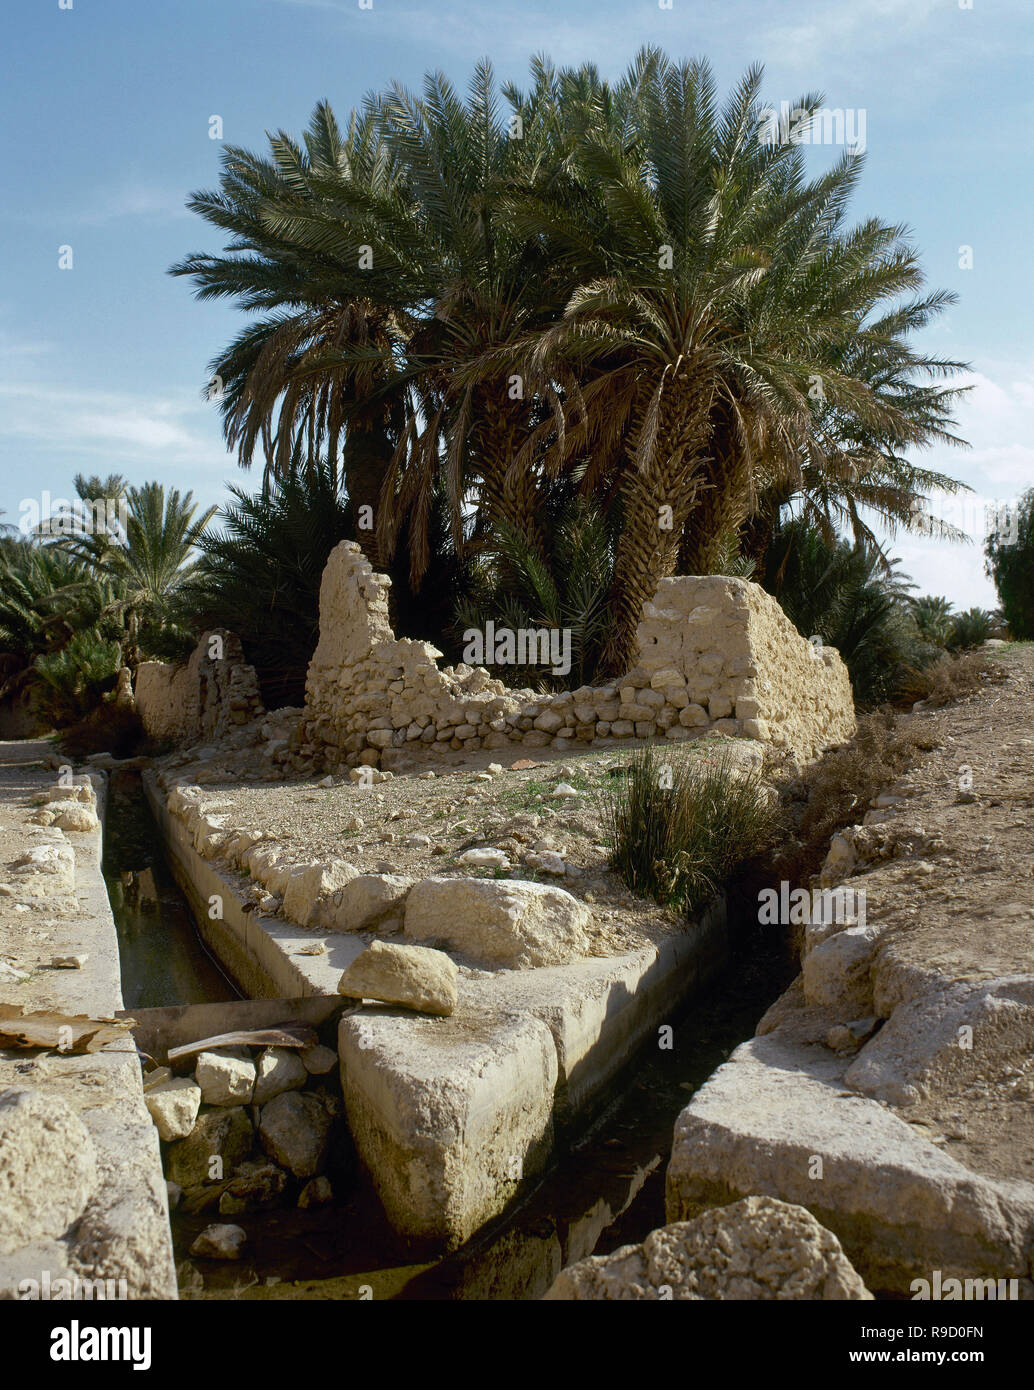 Syrien. Die Oase von Palmyra. Palm Grove. Der Graben im Vordergrund wurde verwendet, Oase Feld zu bewässern. Foto vor dem syrischen Bürgerkrieg. Stockfoto